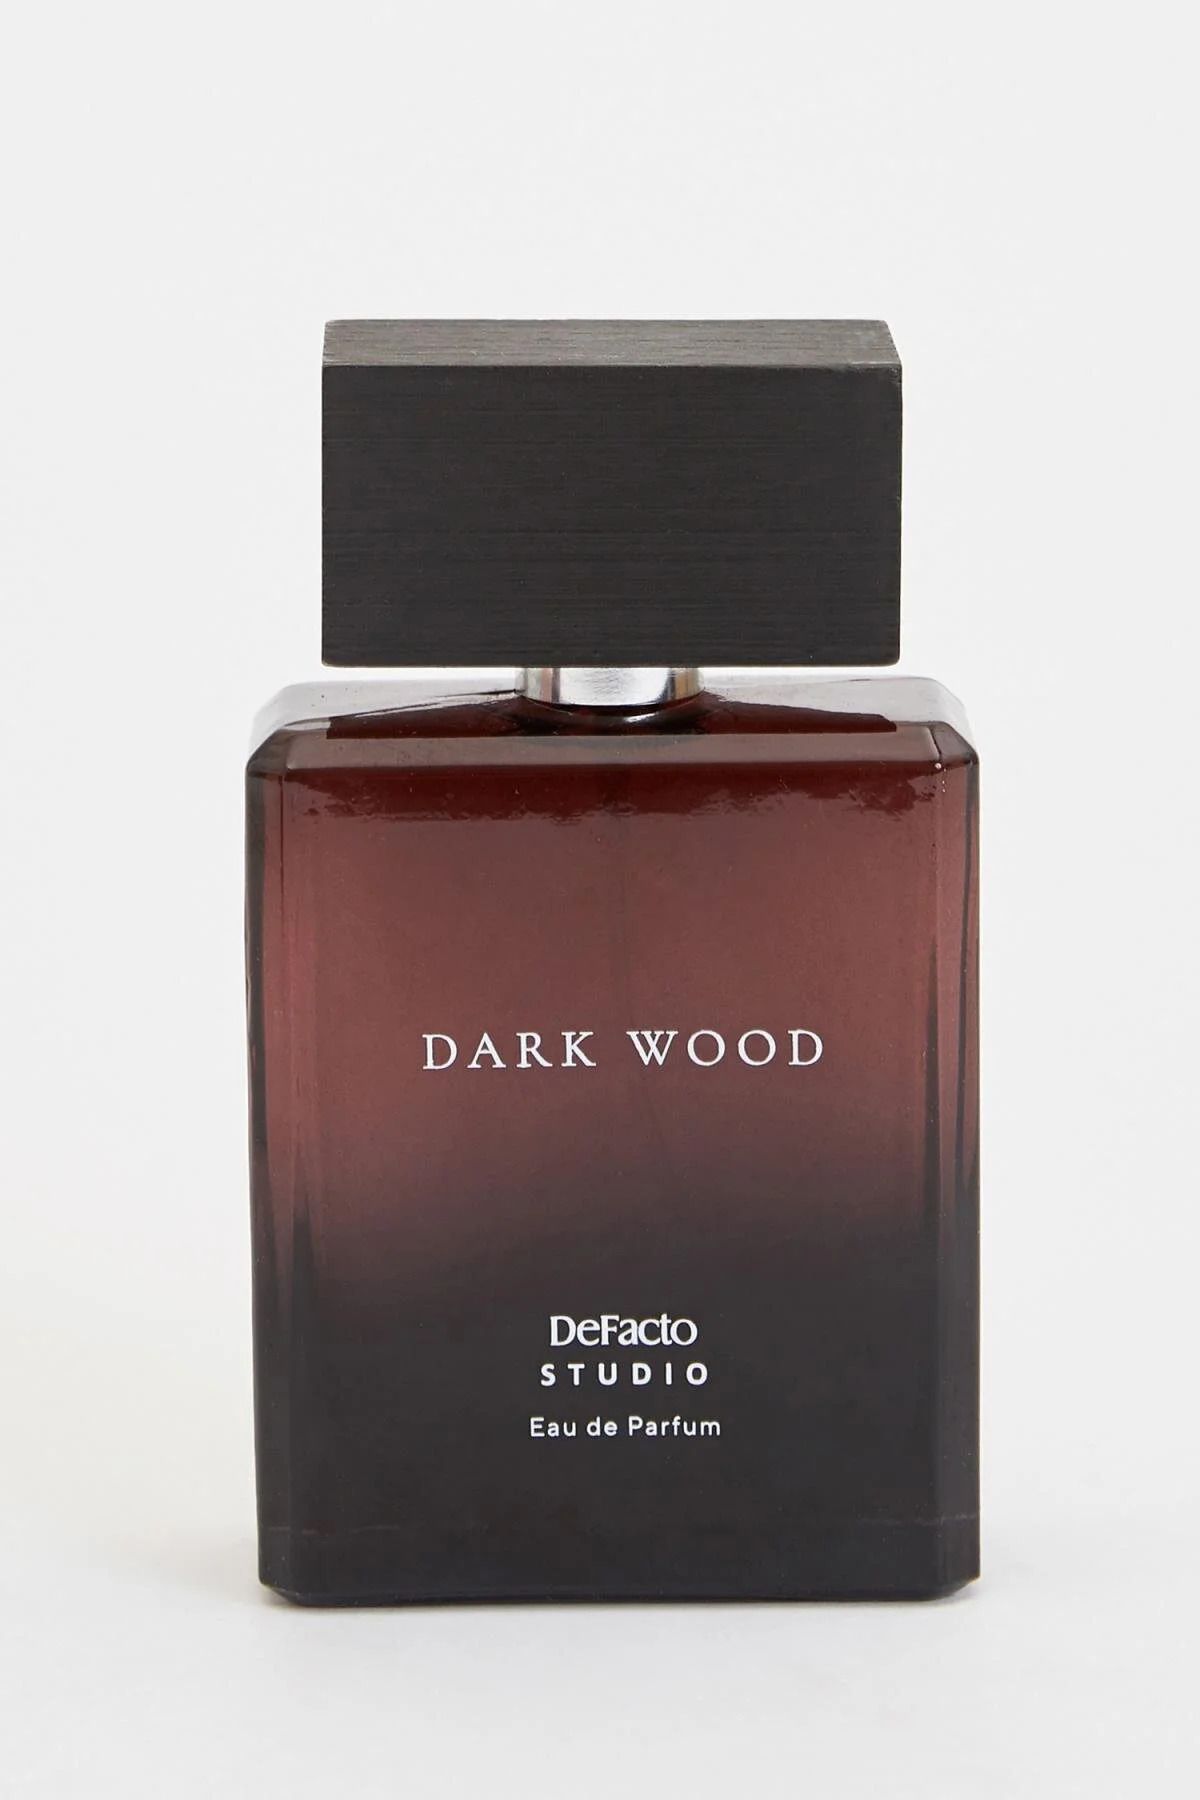 عطر مردانه دارک وود 85 میل دیفکتو Dark Wood Defacto